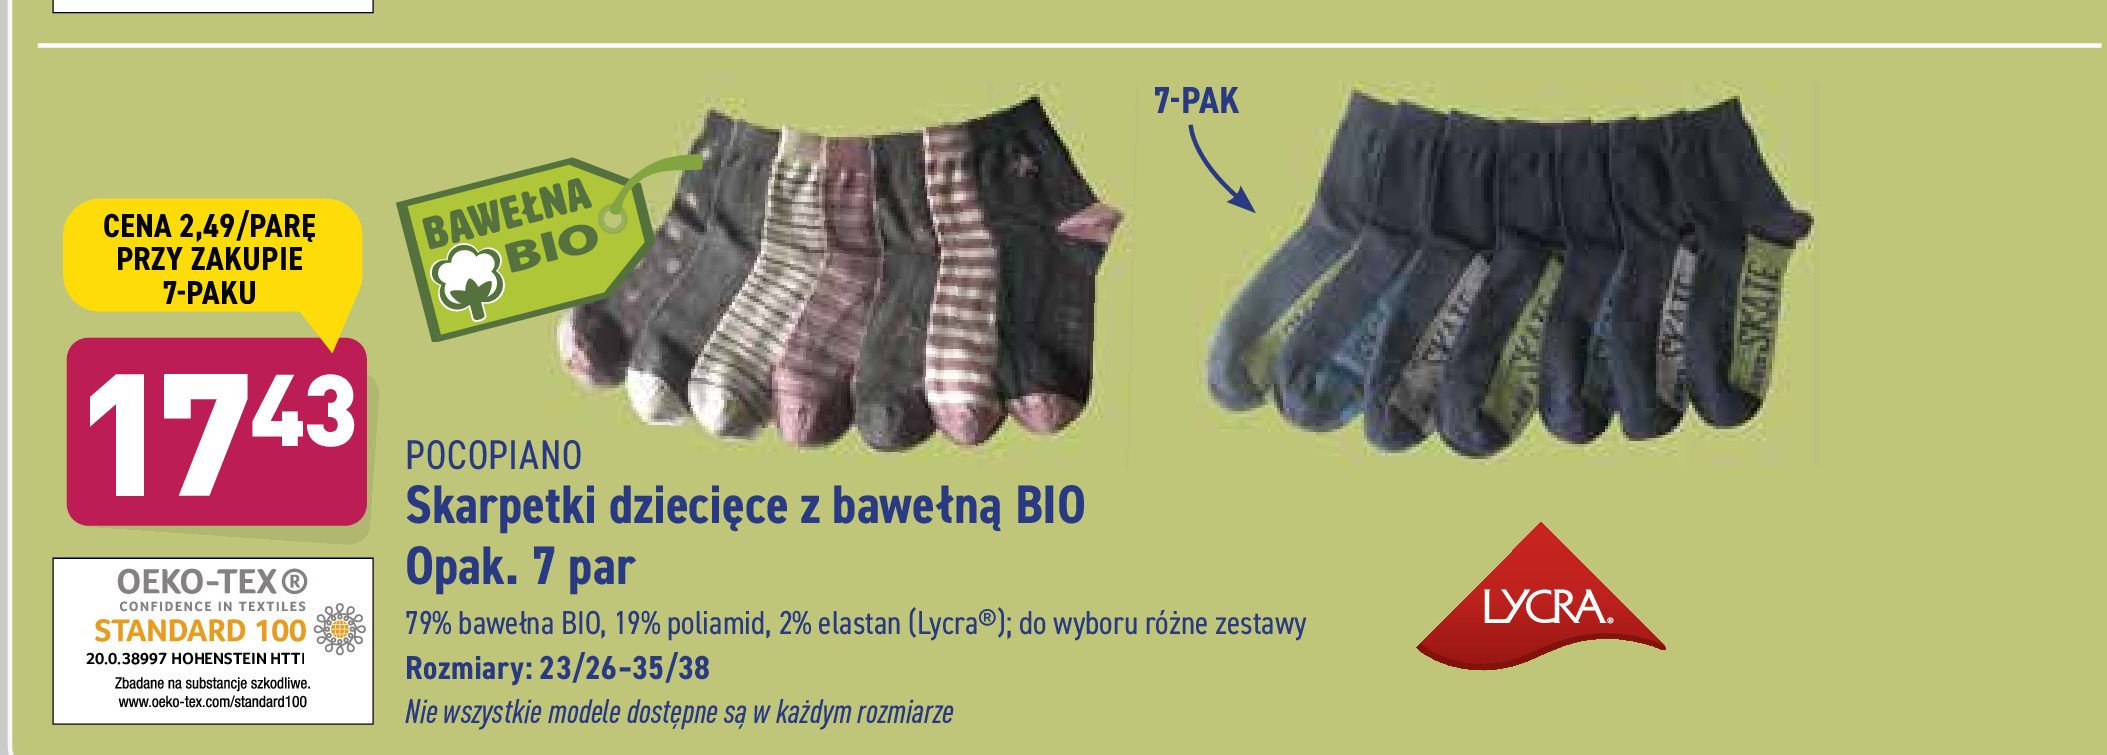 Skarpetki dziecięce z bawełną bio Pocopiano promocja